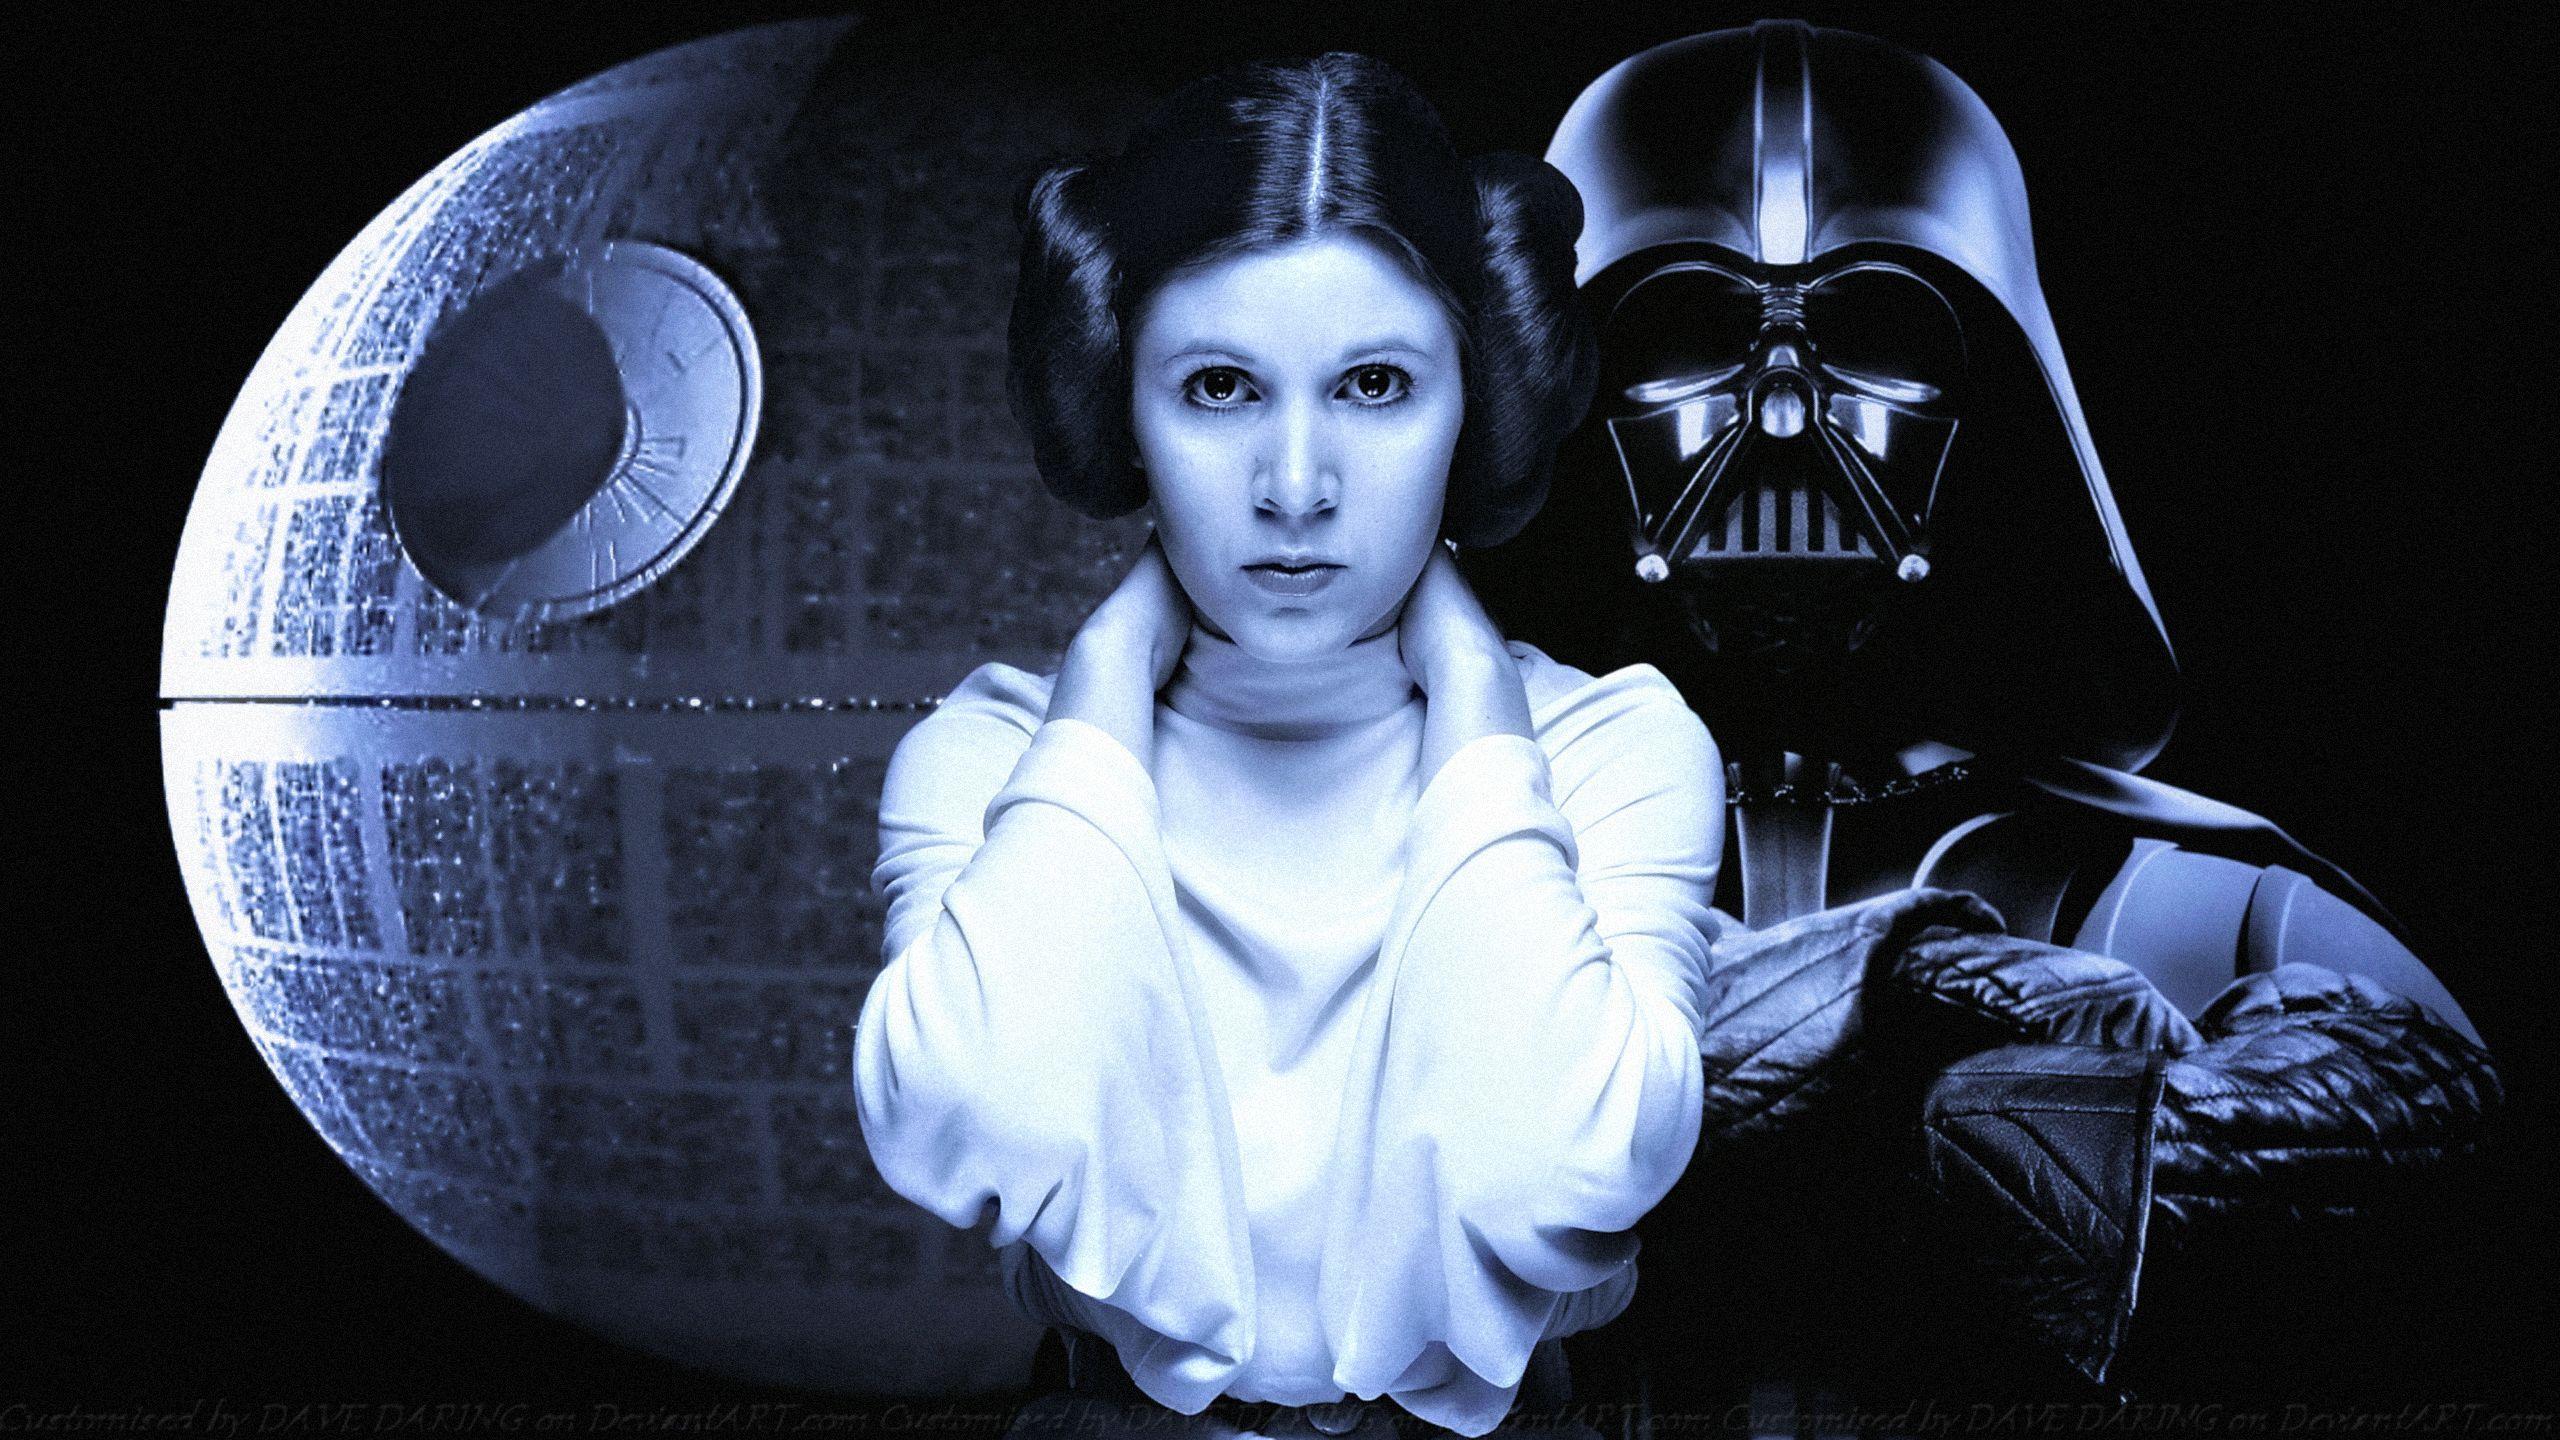 Ο "Darth Vader" συνάντησε για πρώτη φορά την "Princess Leia" στο